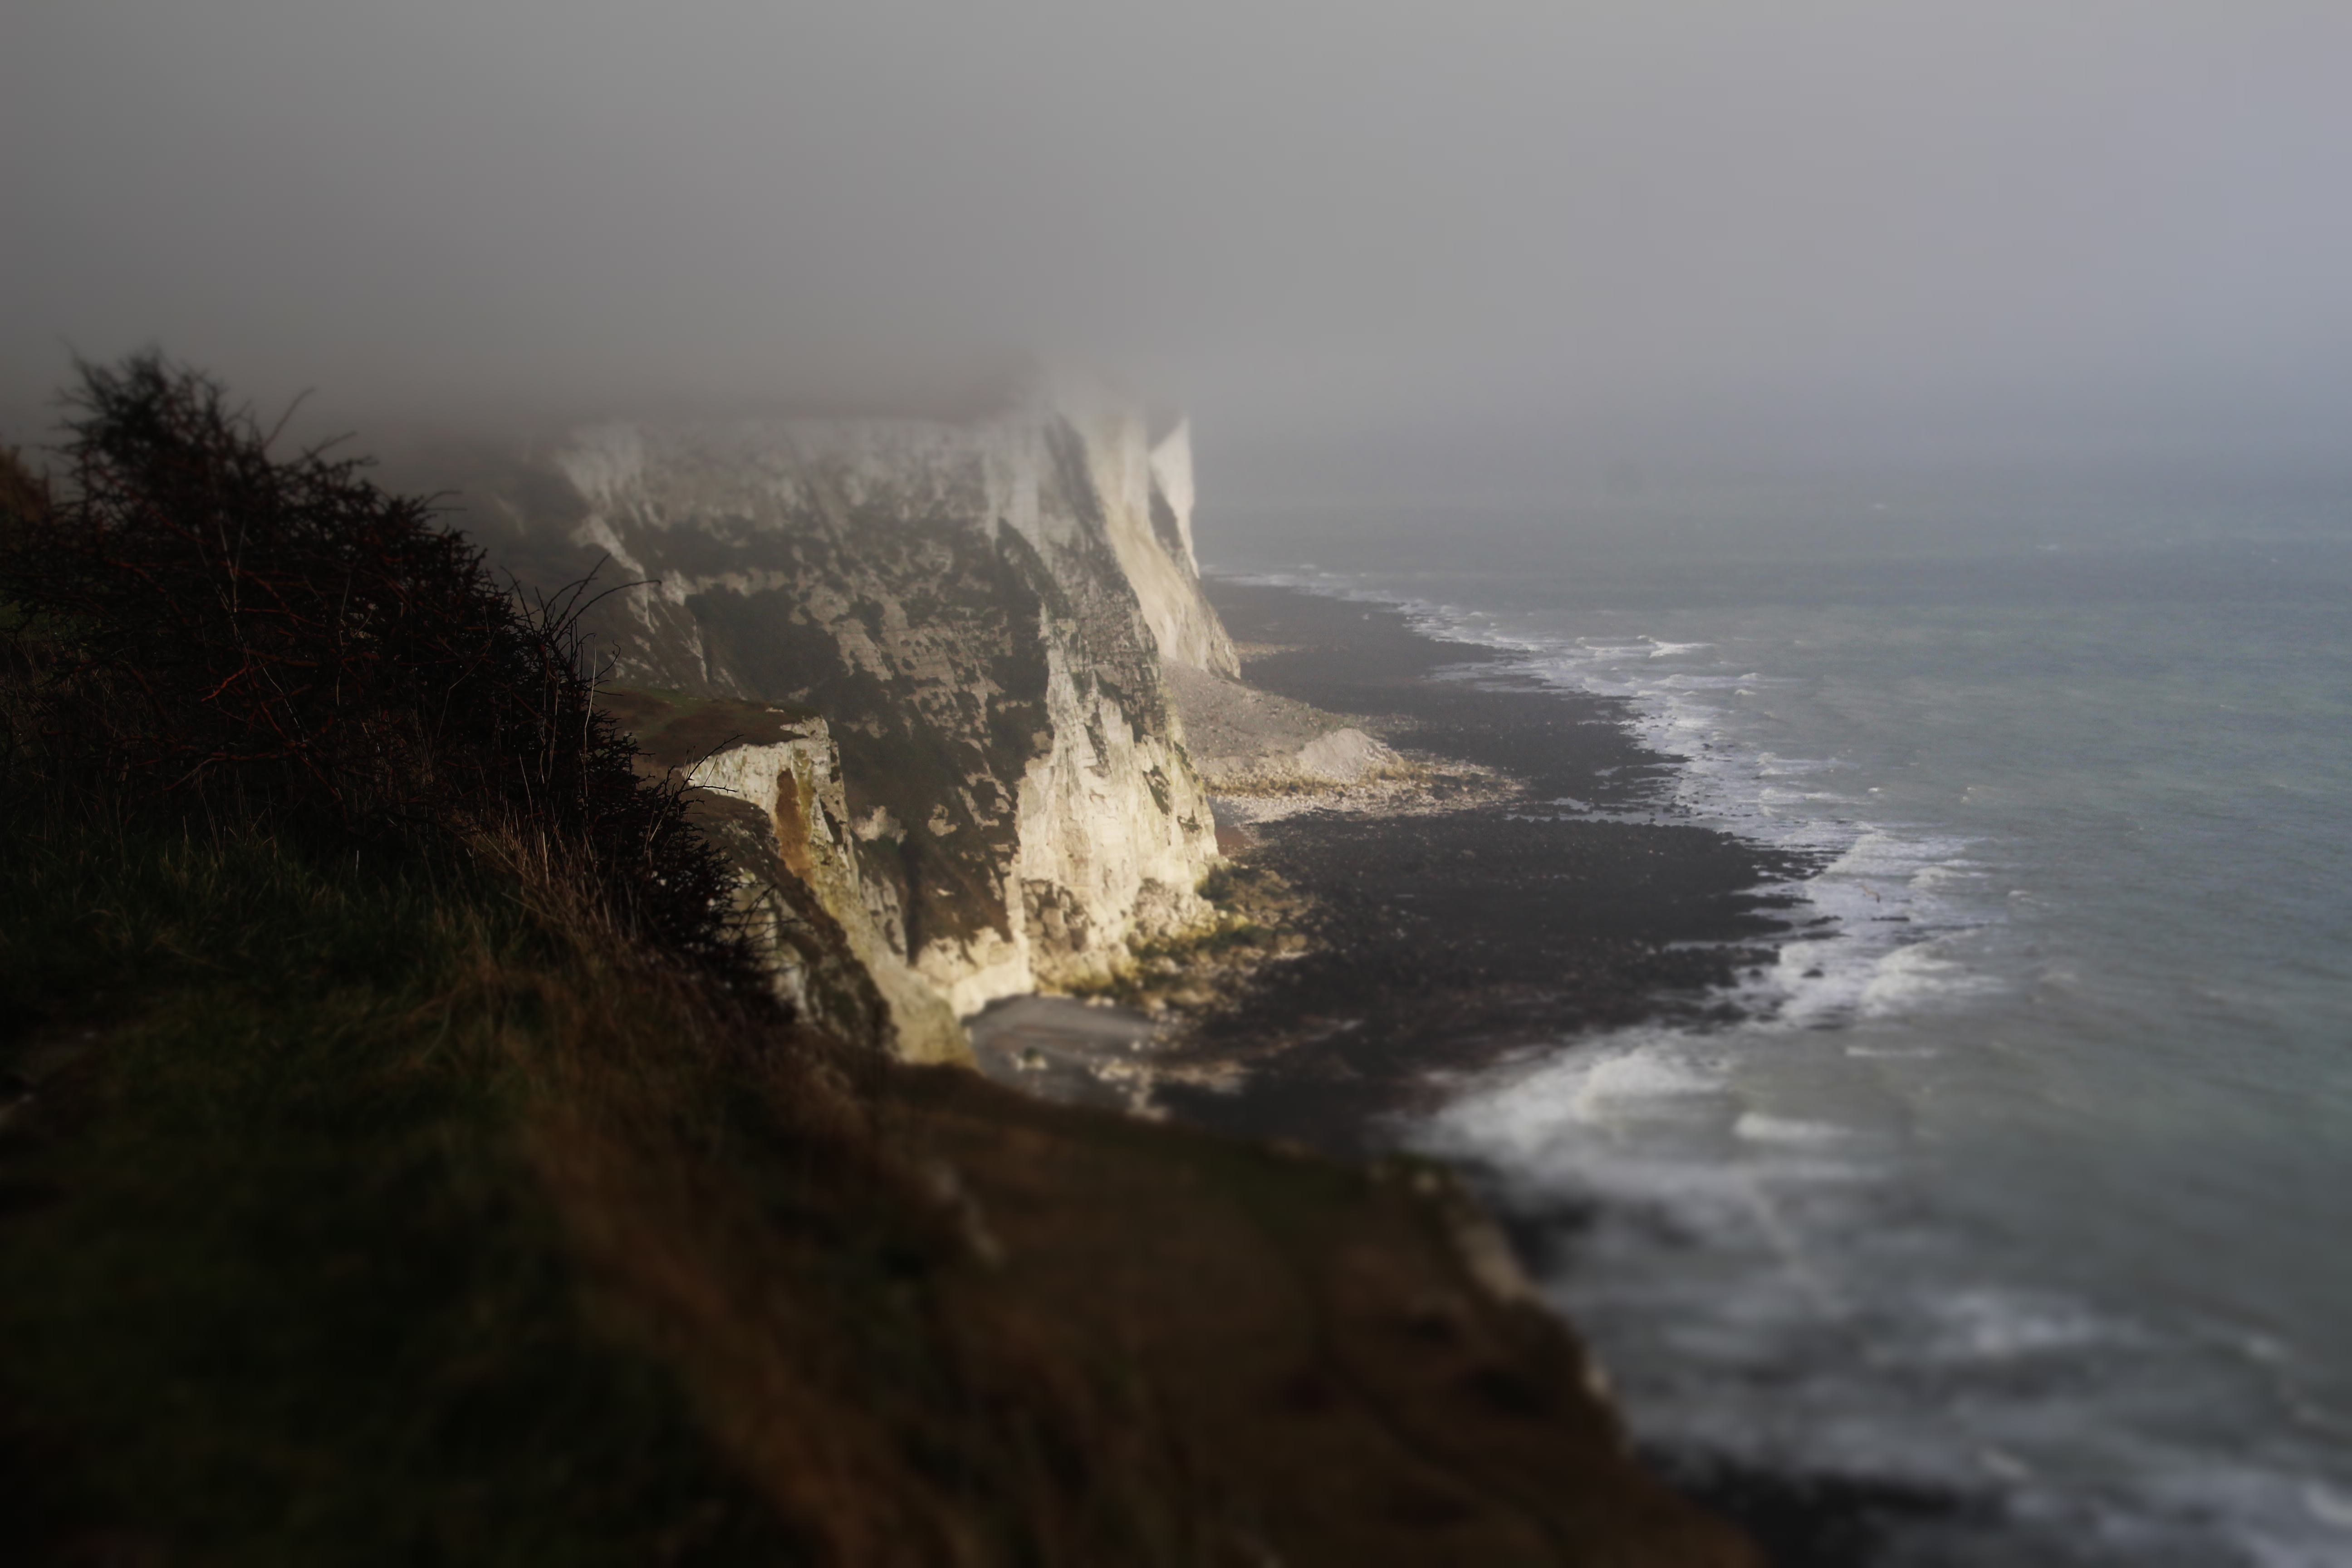 General 5184x3456 nature landscape sea cliff coastline Cliffs of Dover England UK mist plants depth of field waves tilt shift